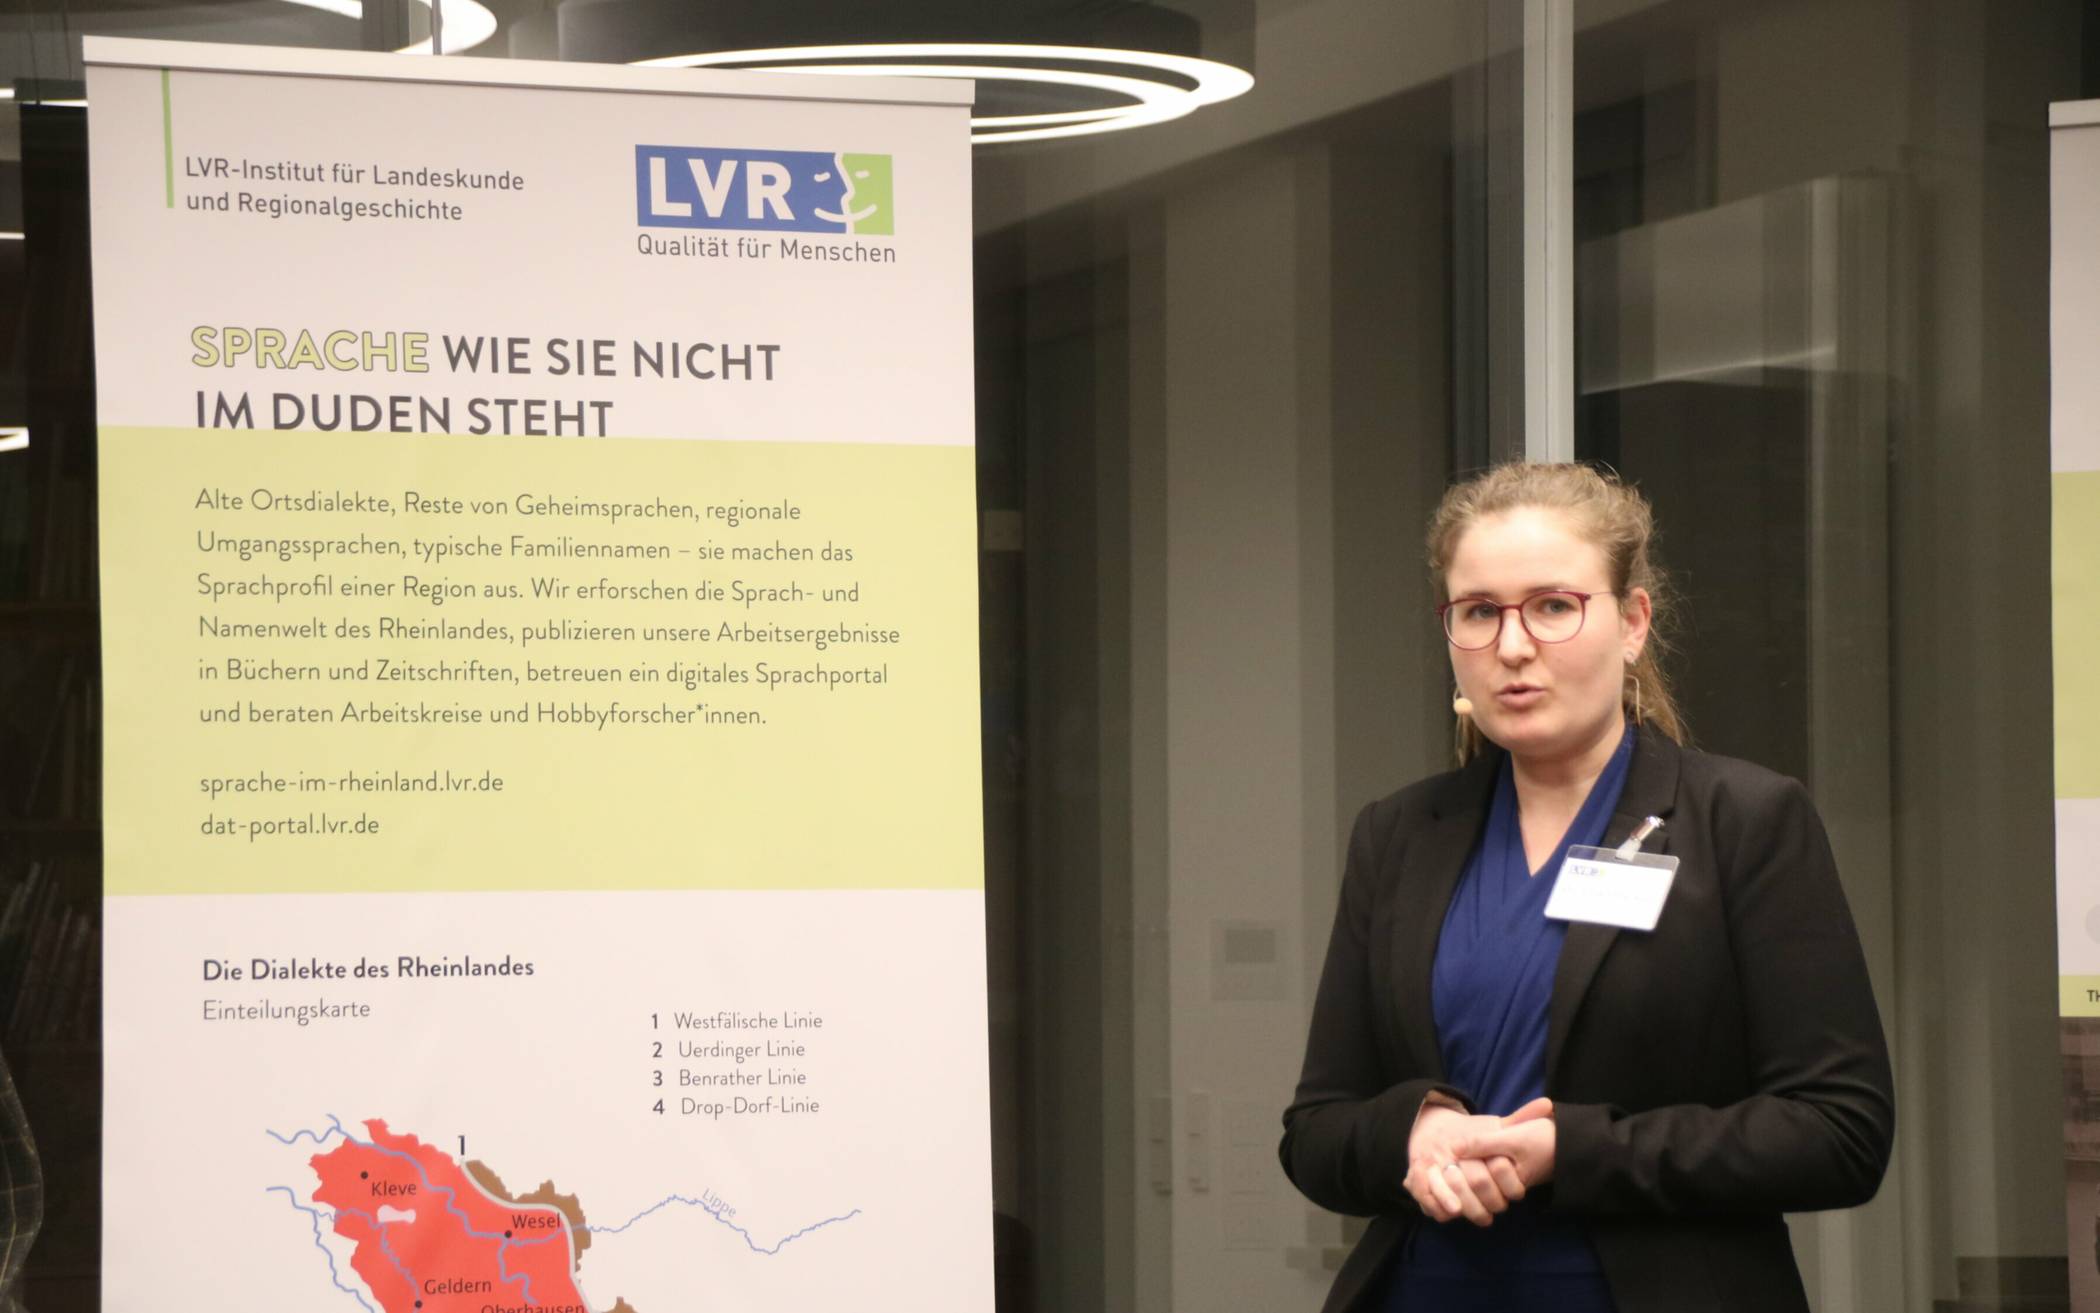 LVR-Sprachforscherin Dr. Charlotte Rein. Foto: LVR-Institut